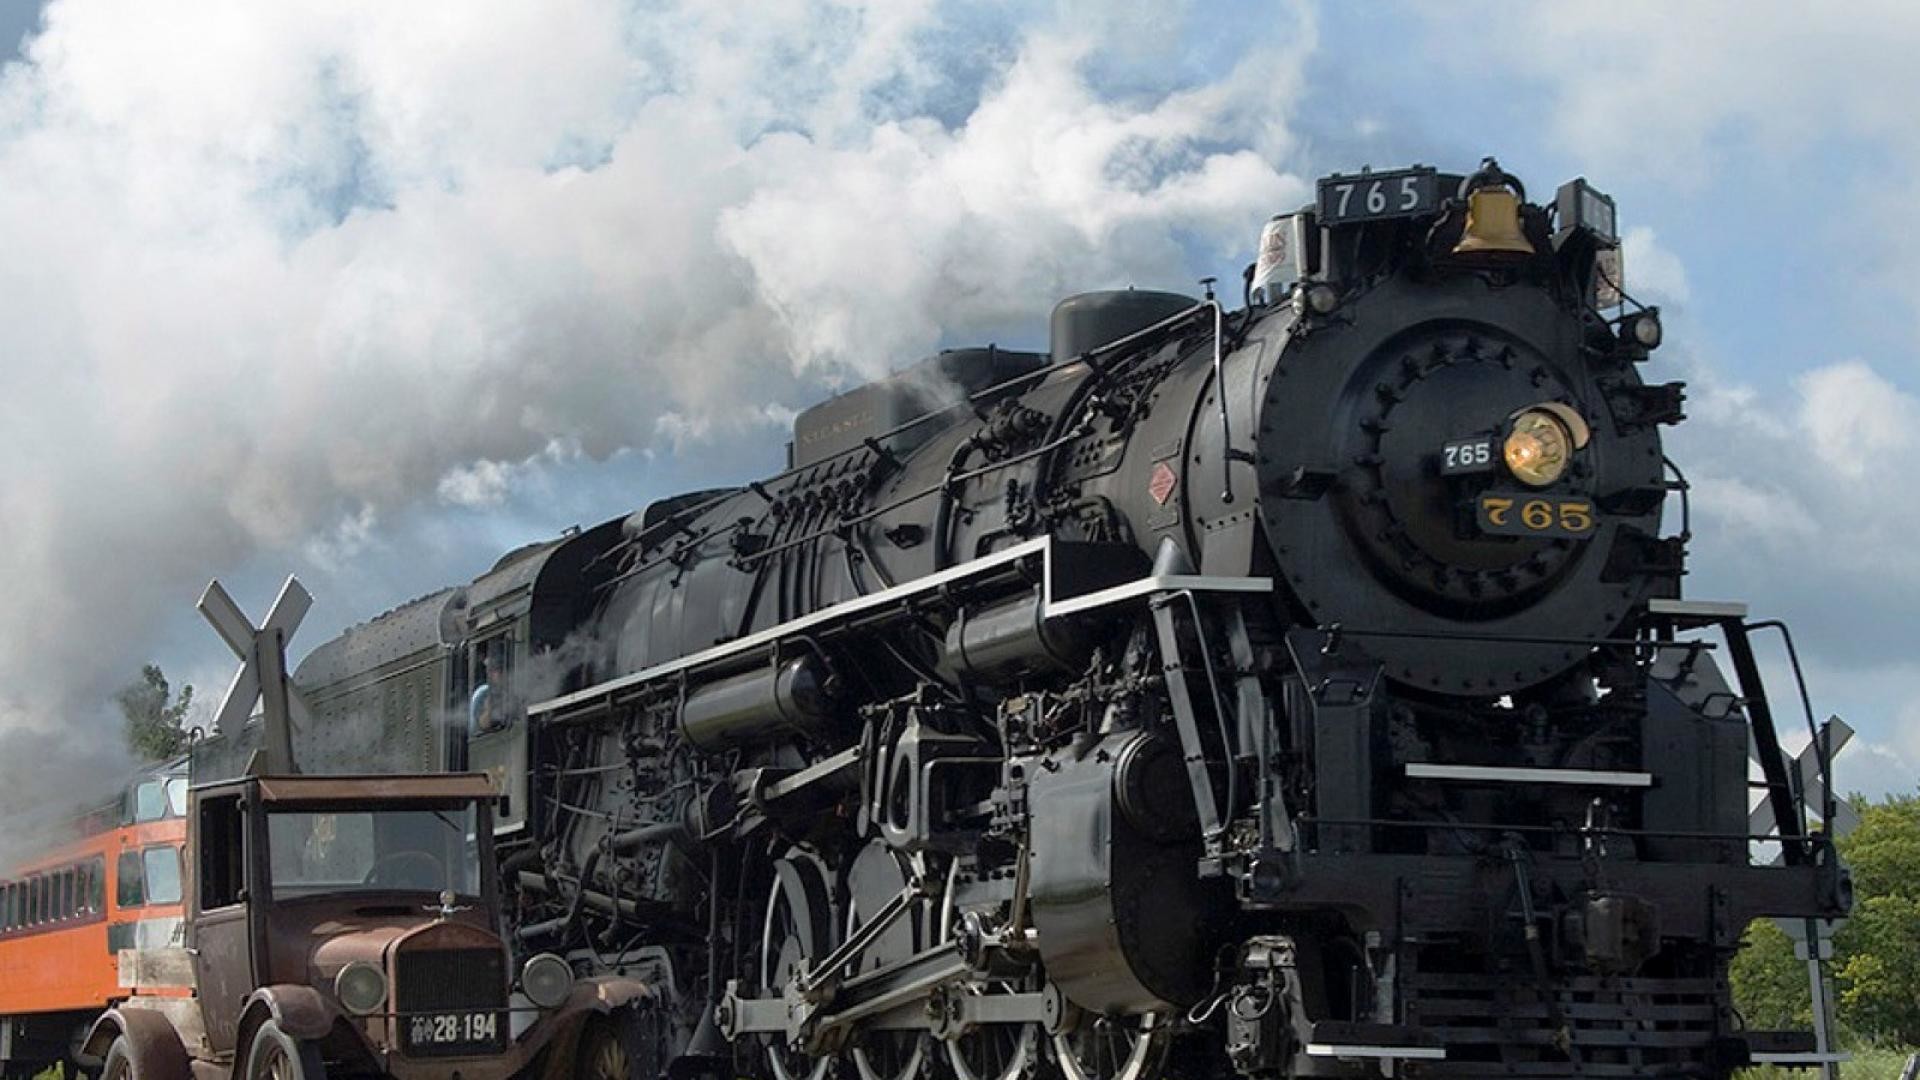 1920x1080 Explore Steam Locomotive, Train Wallpaper, and more!